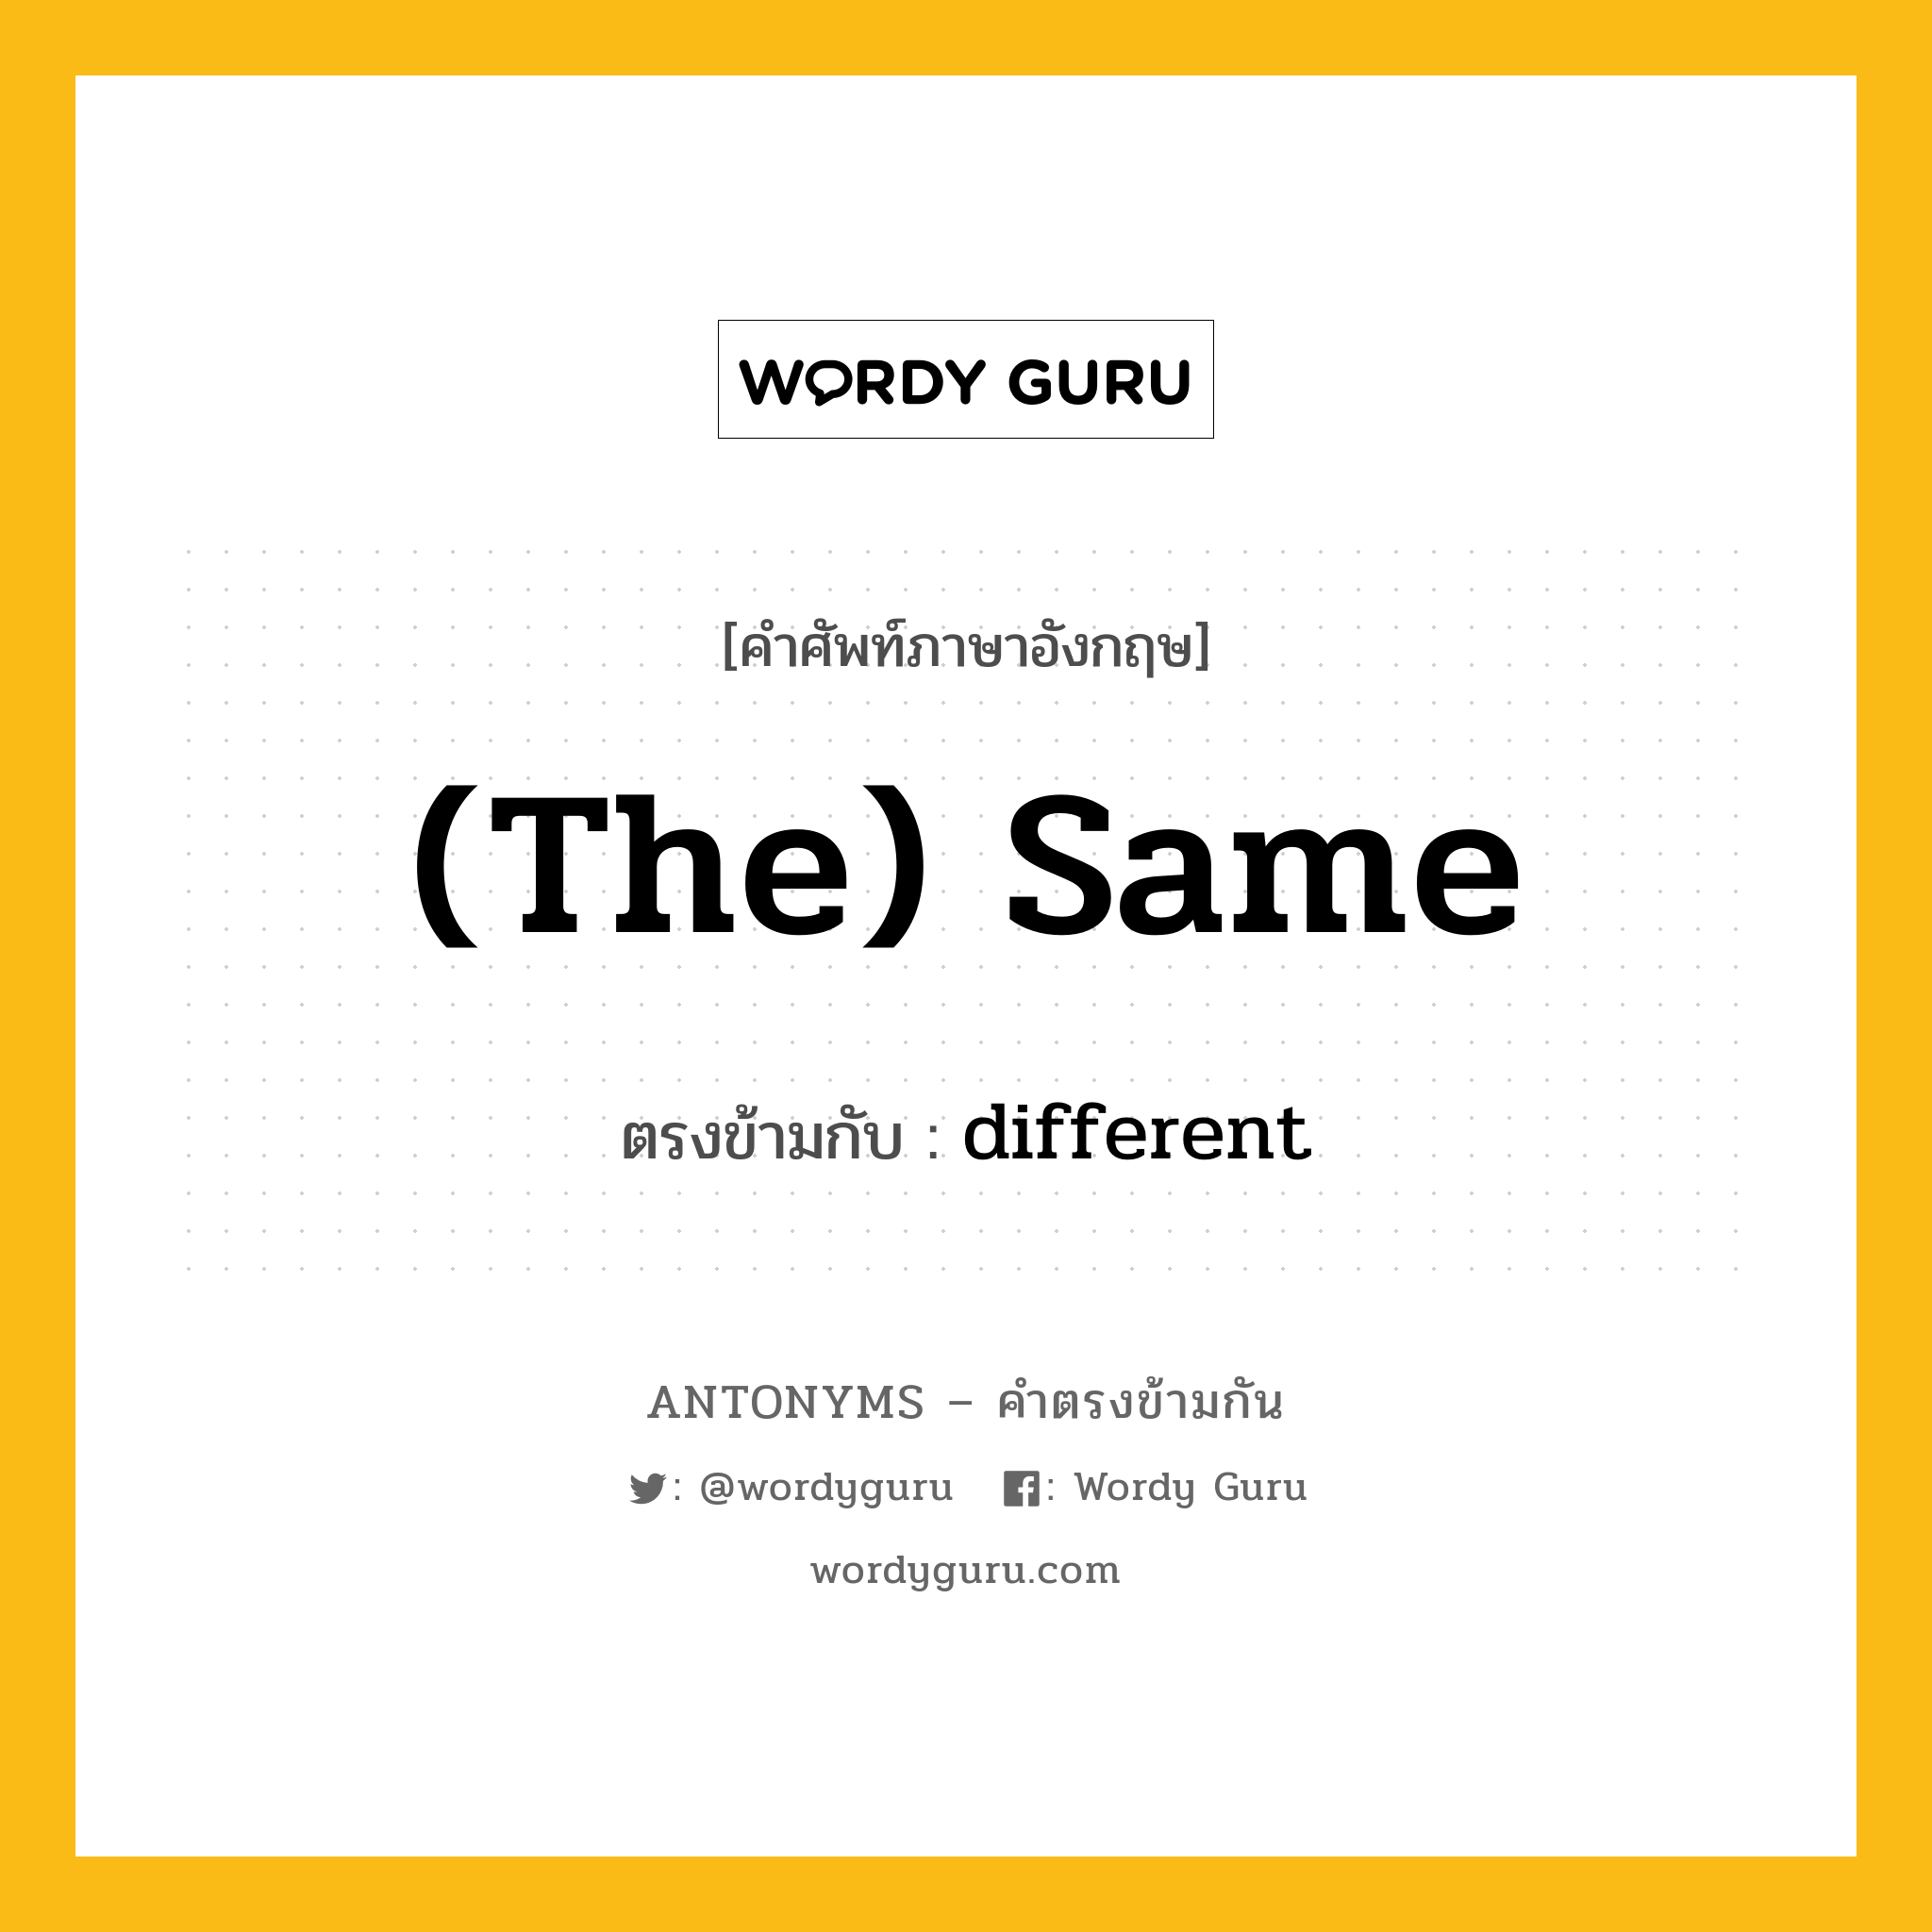 (the) same เป็นคำตรงข้ามกับคำไหนบ้าง?, คำศัพท์ภาษาอังกฤษ (the) same ตรงข้ามกับ different หมวด different